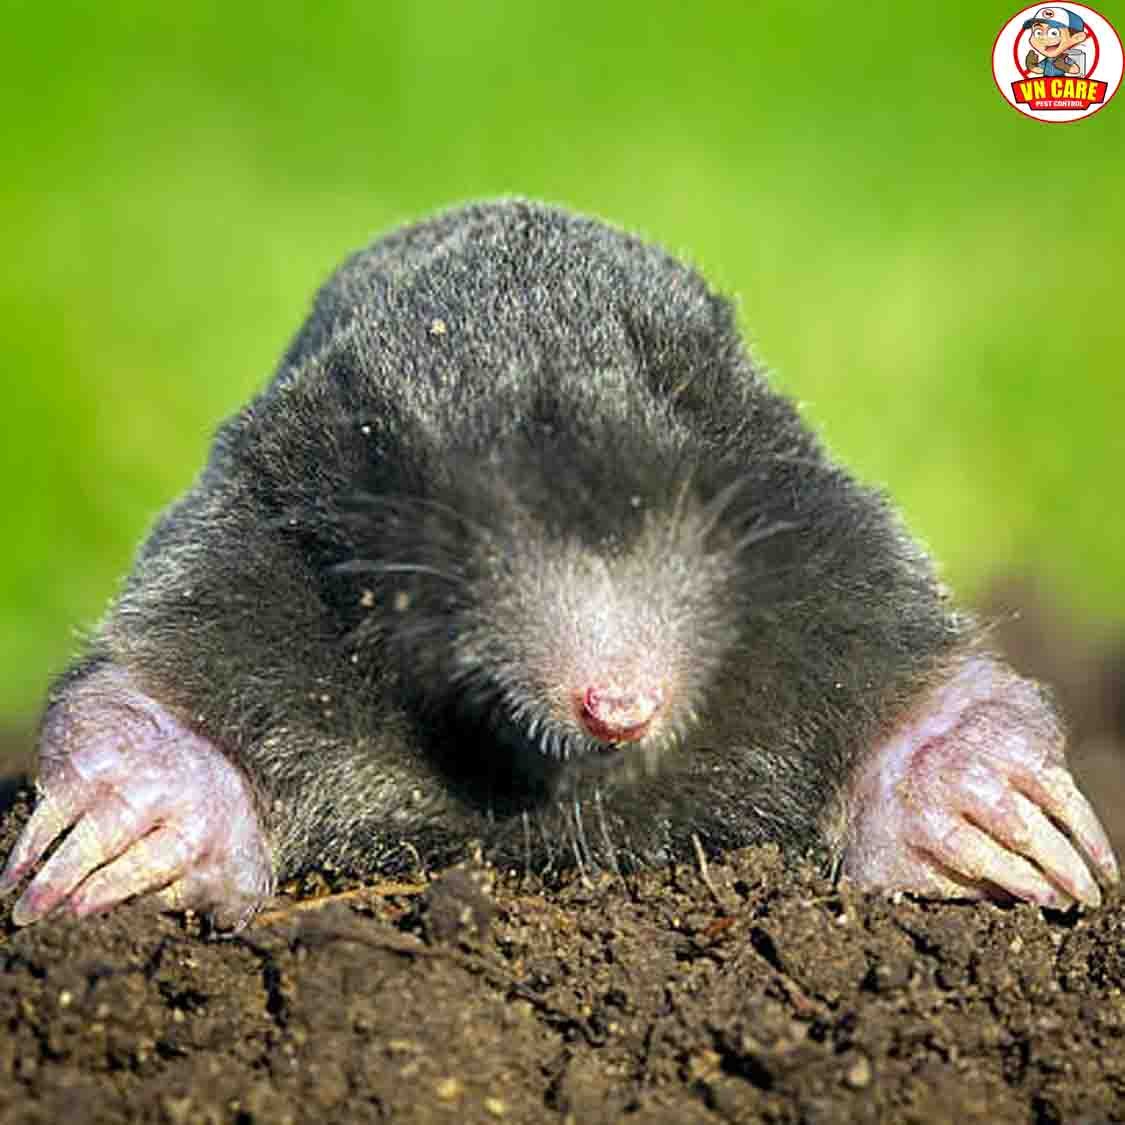 mole control